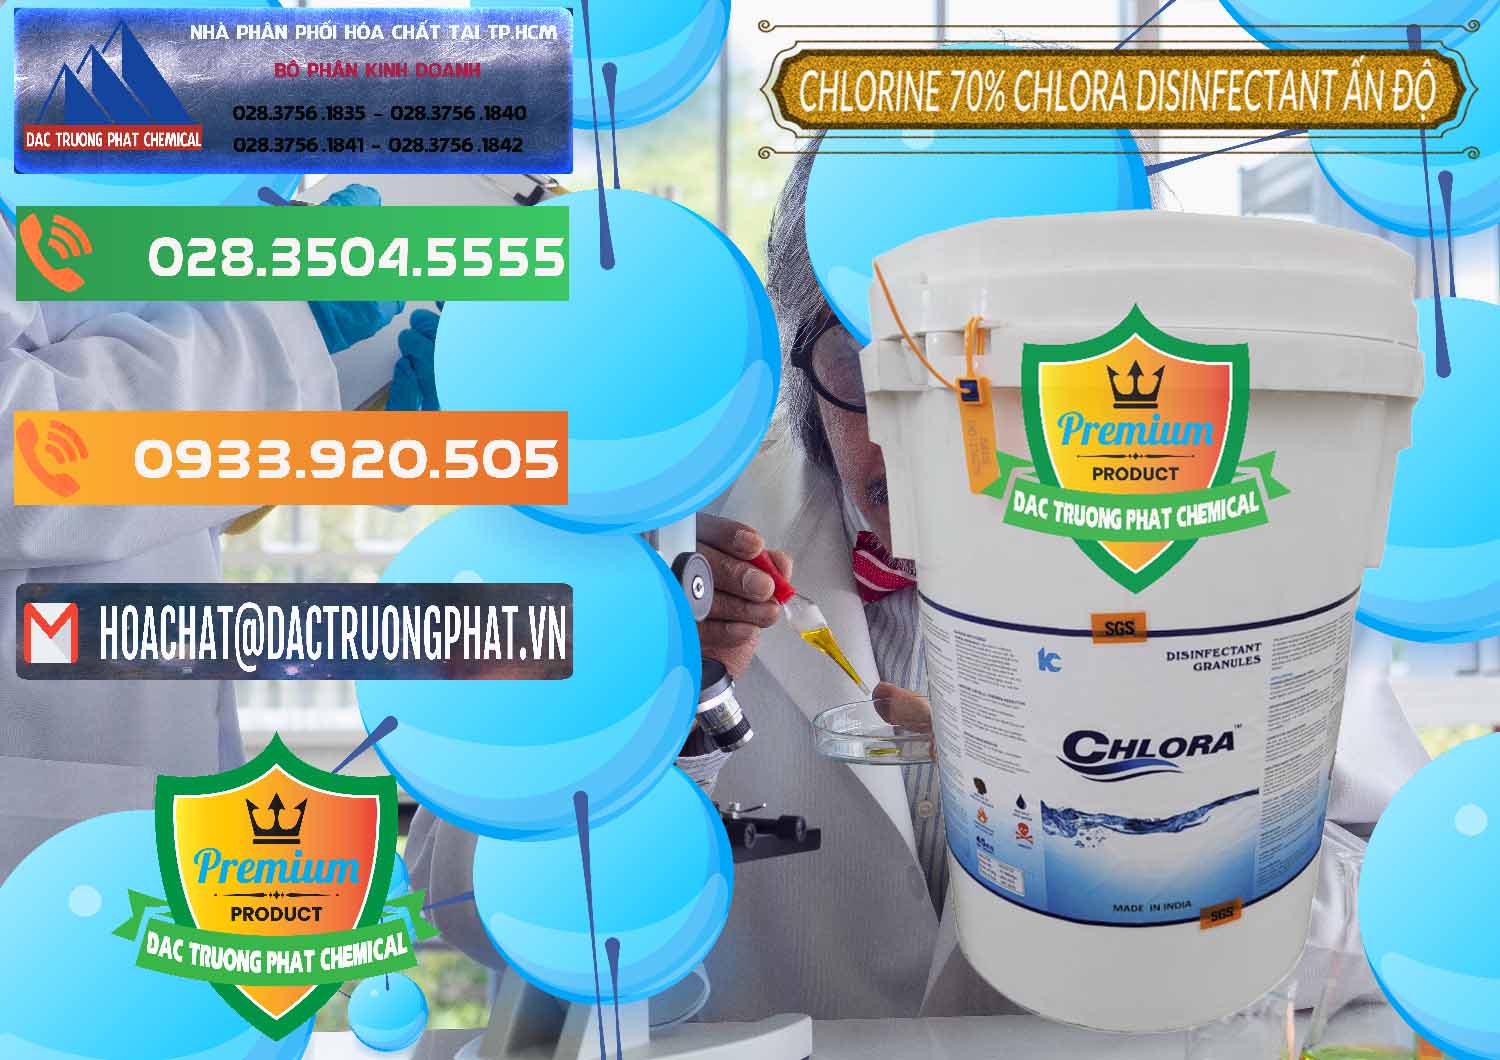 Cty chuyên nhập khẩu ( bán ) Chlorine – Clorin 70% Chlora Disinfectant Ấn Độ India - 0213 - Công ty cung cấp và kinh doanh hóa chất tại TP.HCM - hoachatxulynuoc.com.vn